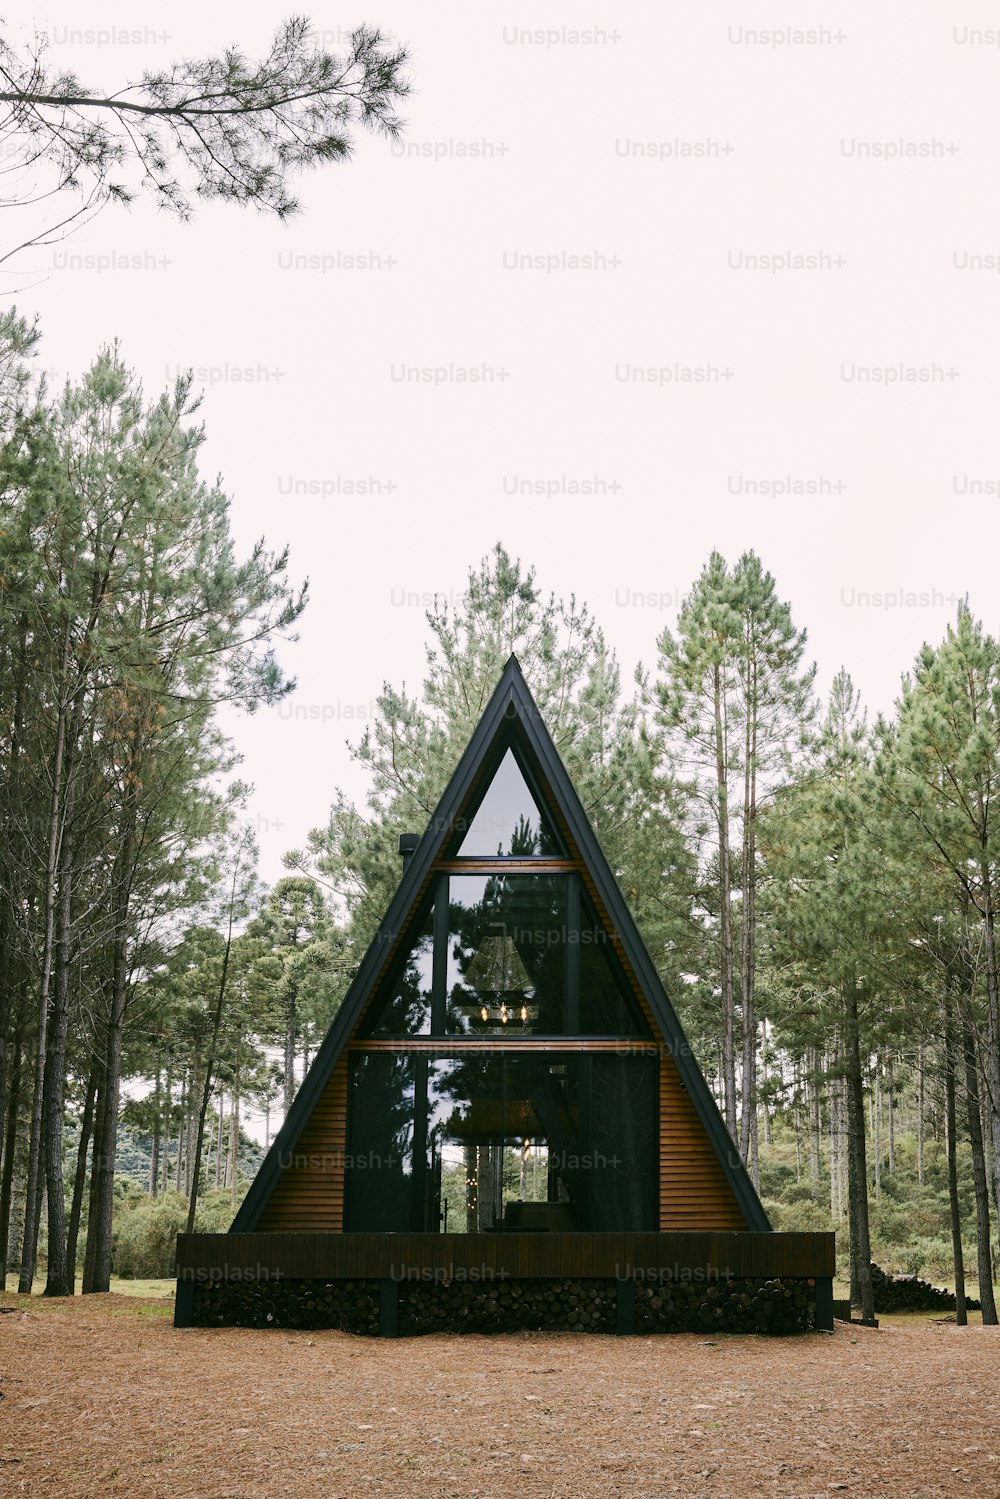 A - Rahmenhütte mitten im Wald